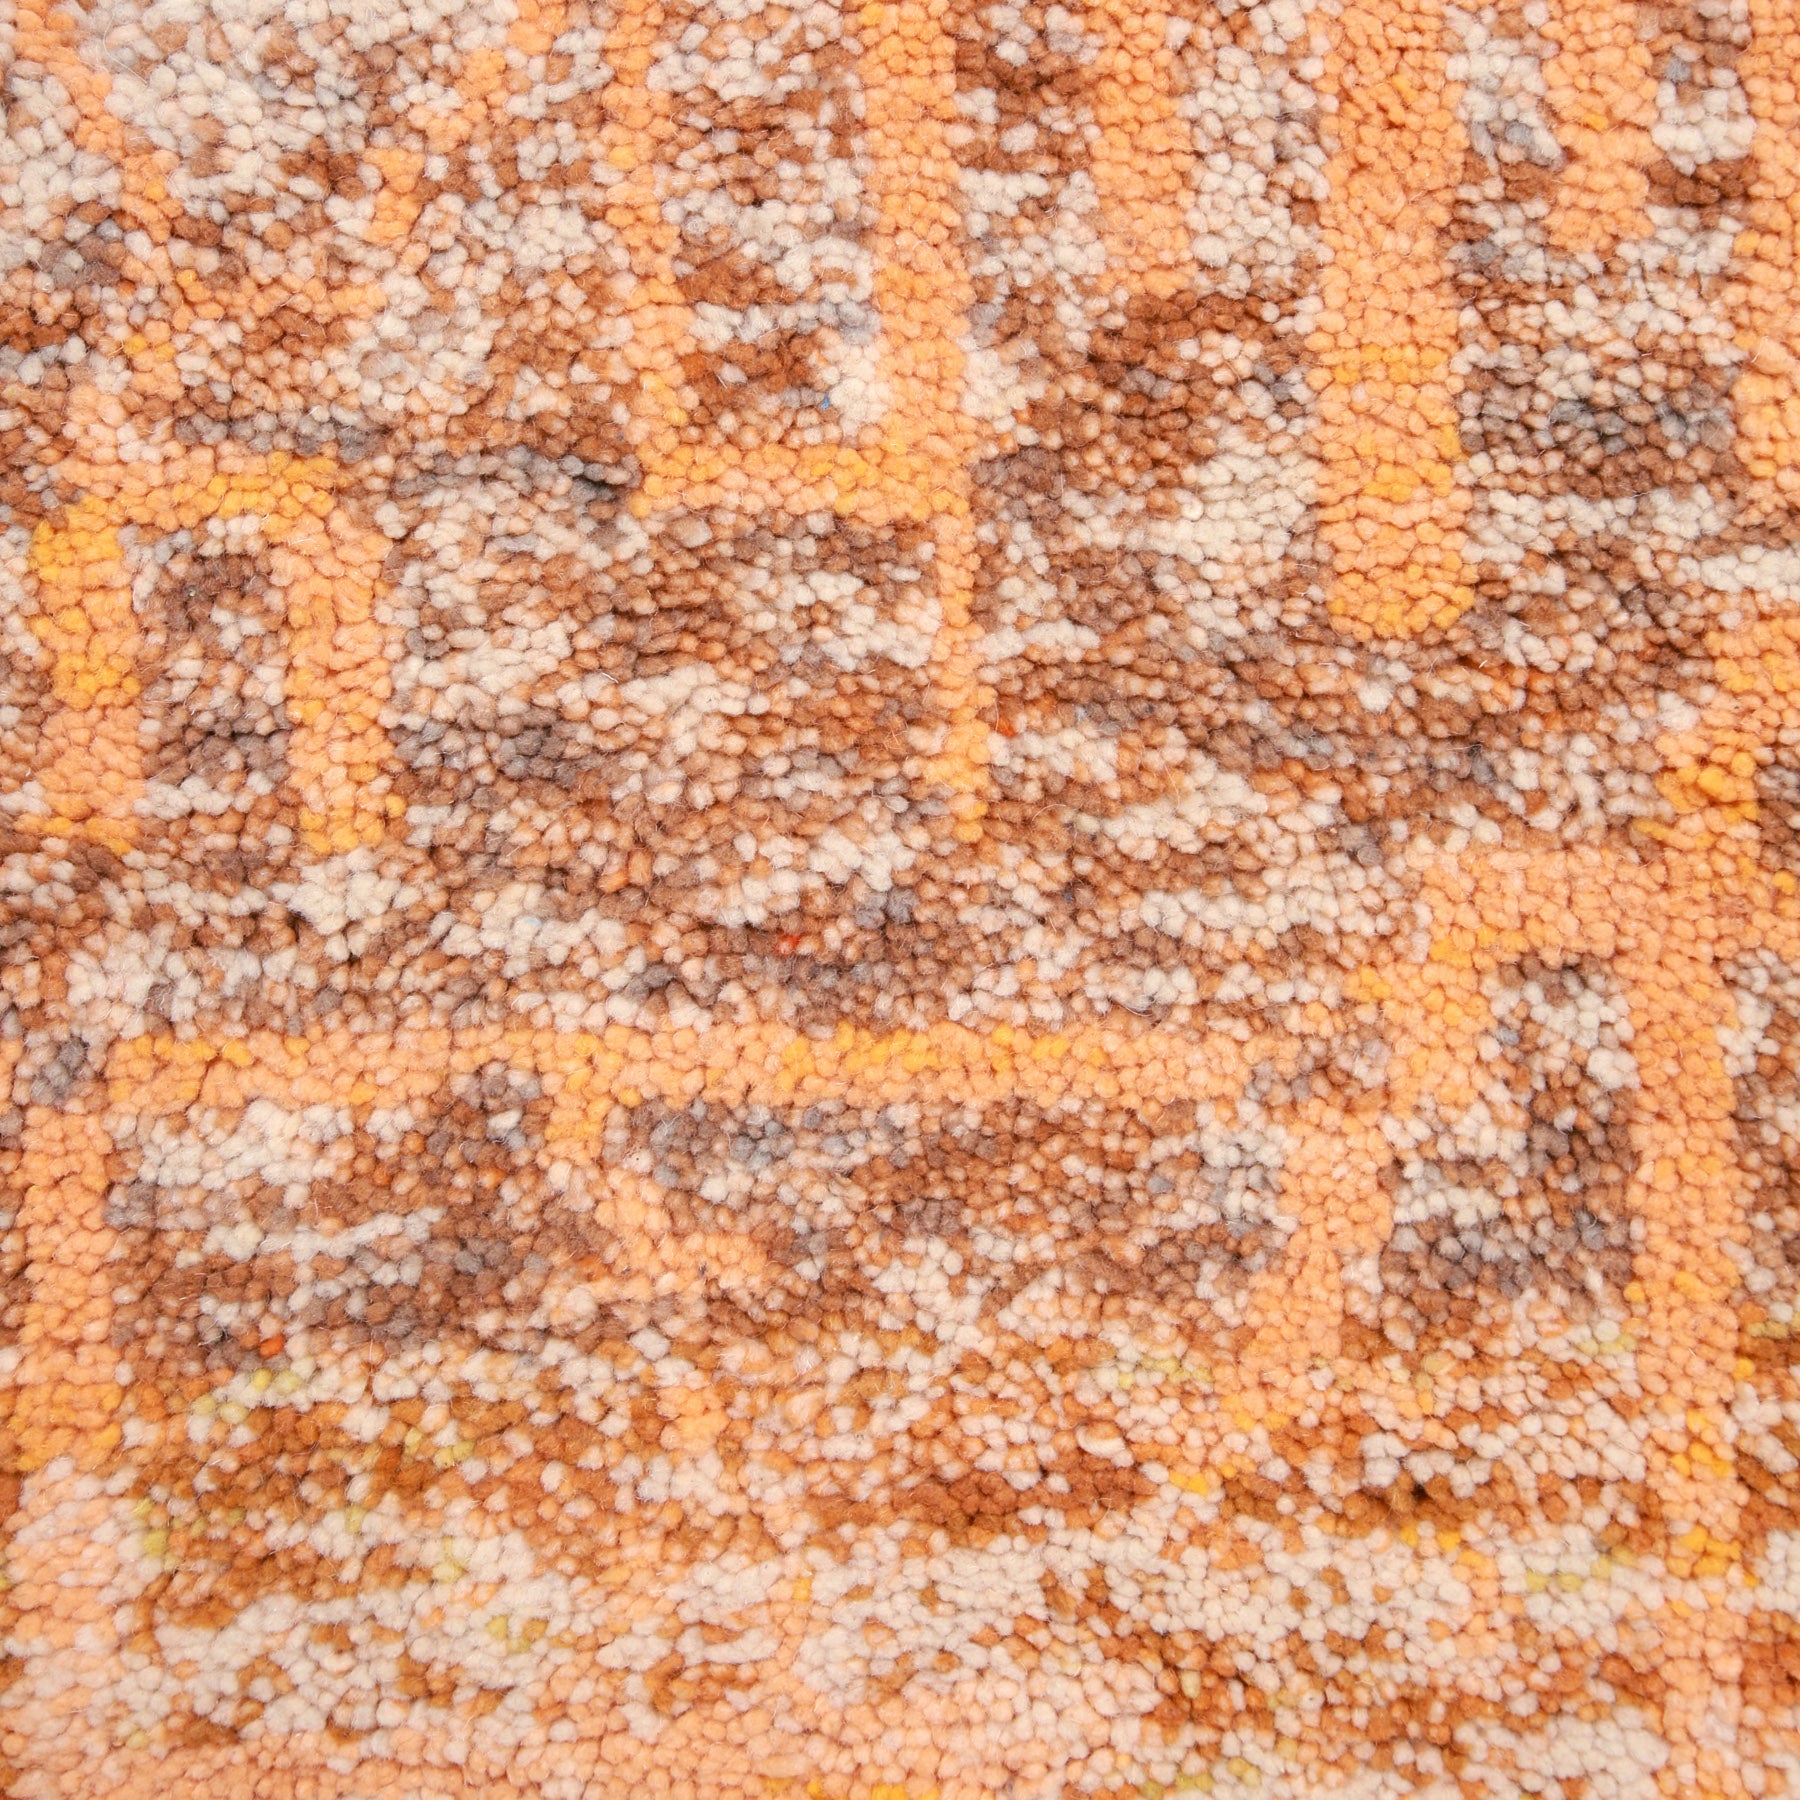 dettaglio dei peli di lana colorata di arancione bianco e marrone di un tappeto beni ourain realizzato a mano 